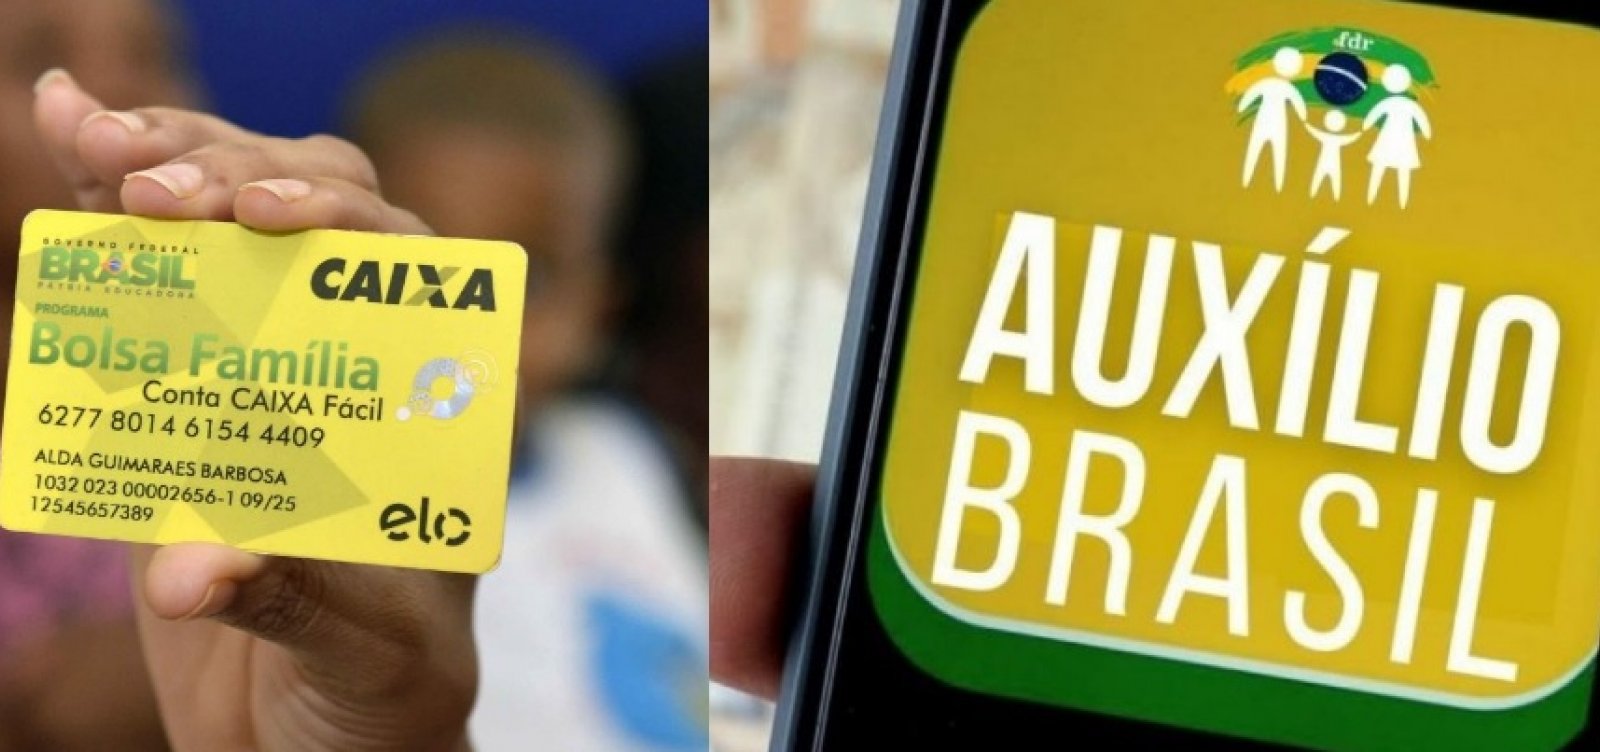 Brasileiro se divide sobre substituição do Bolsa Família por Auxílio Brasil, aponta Datafolha